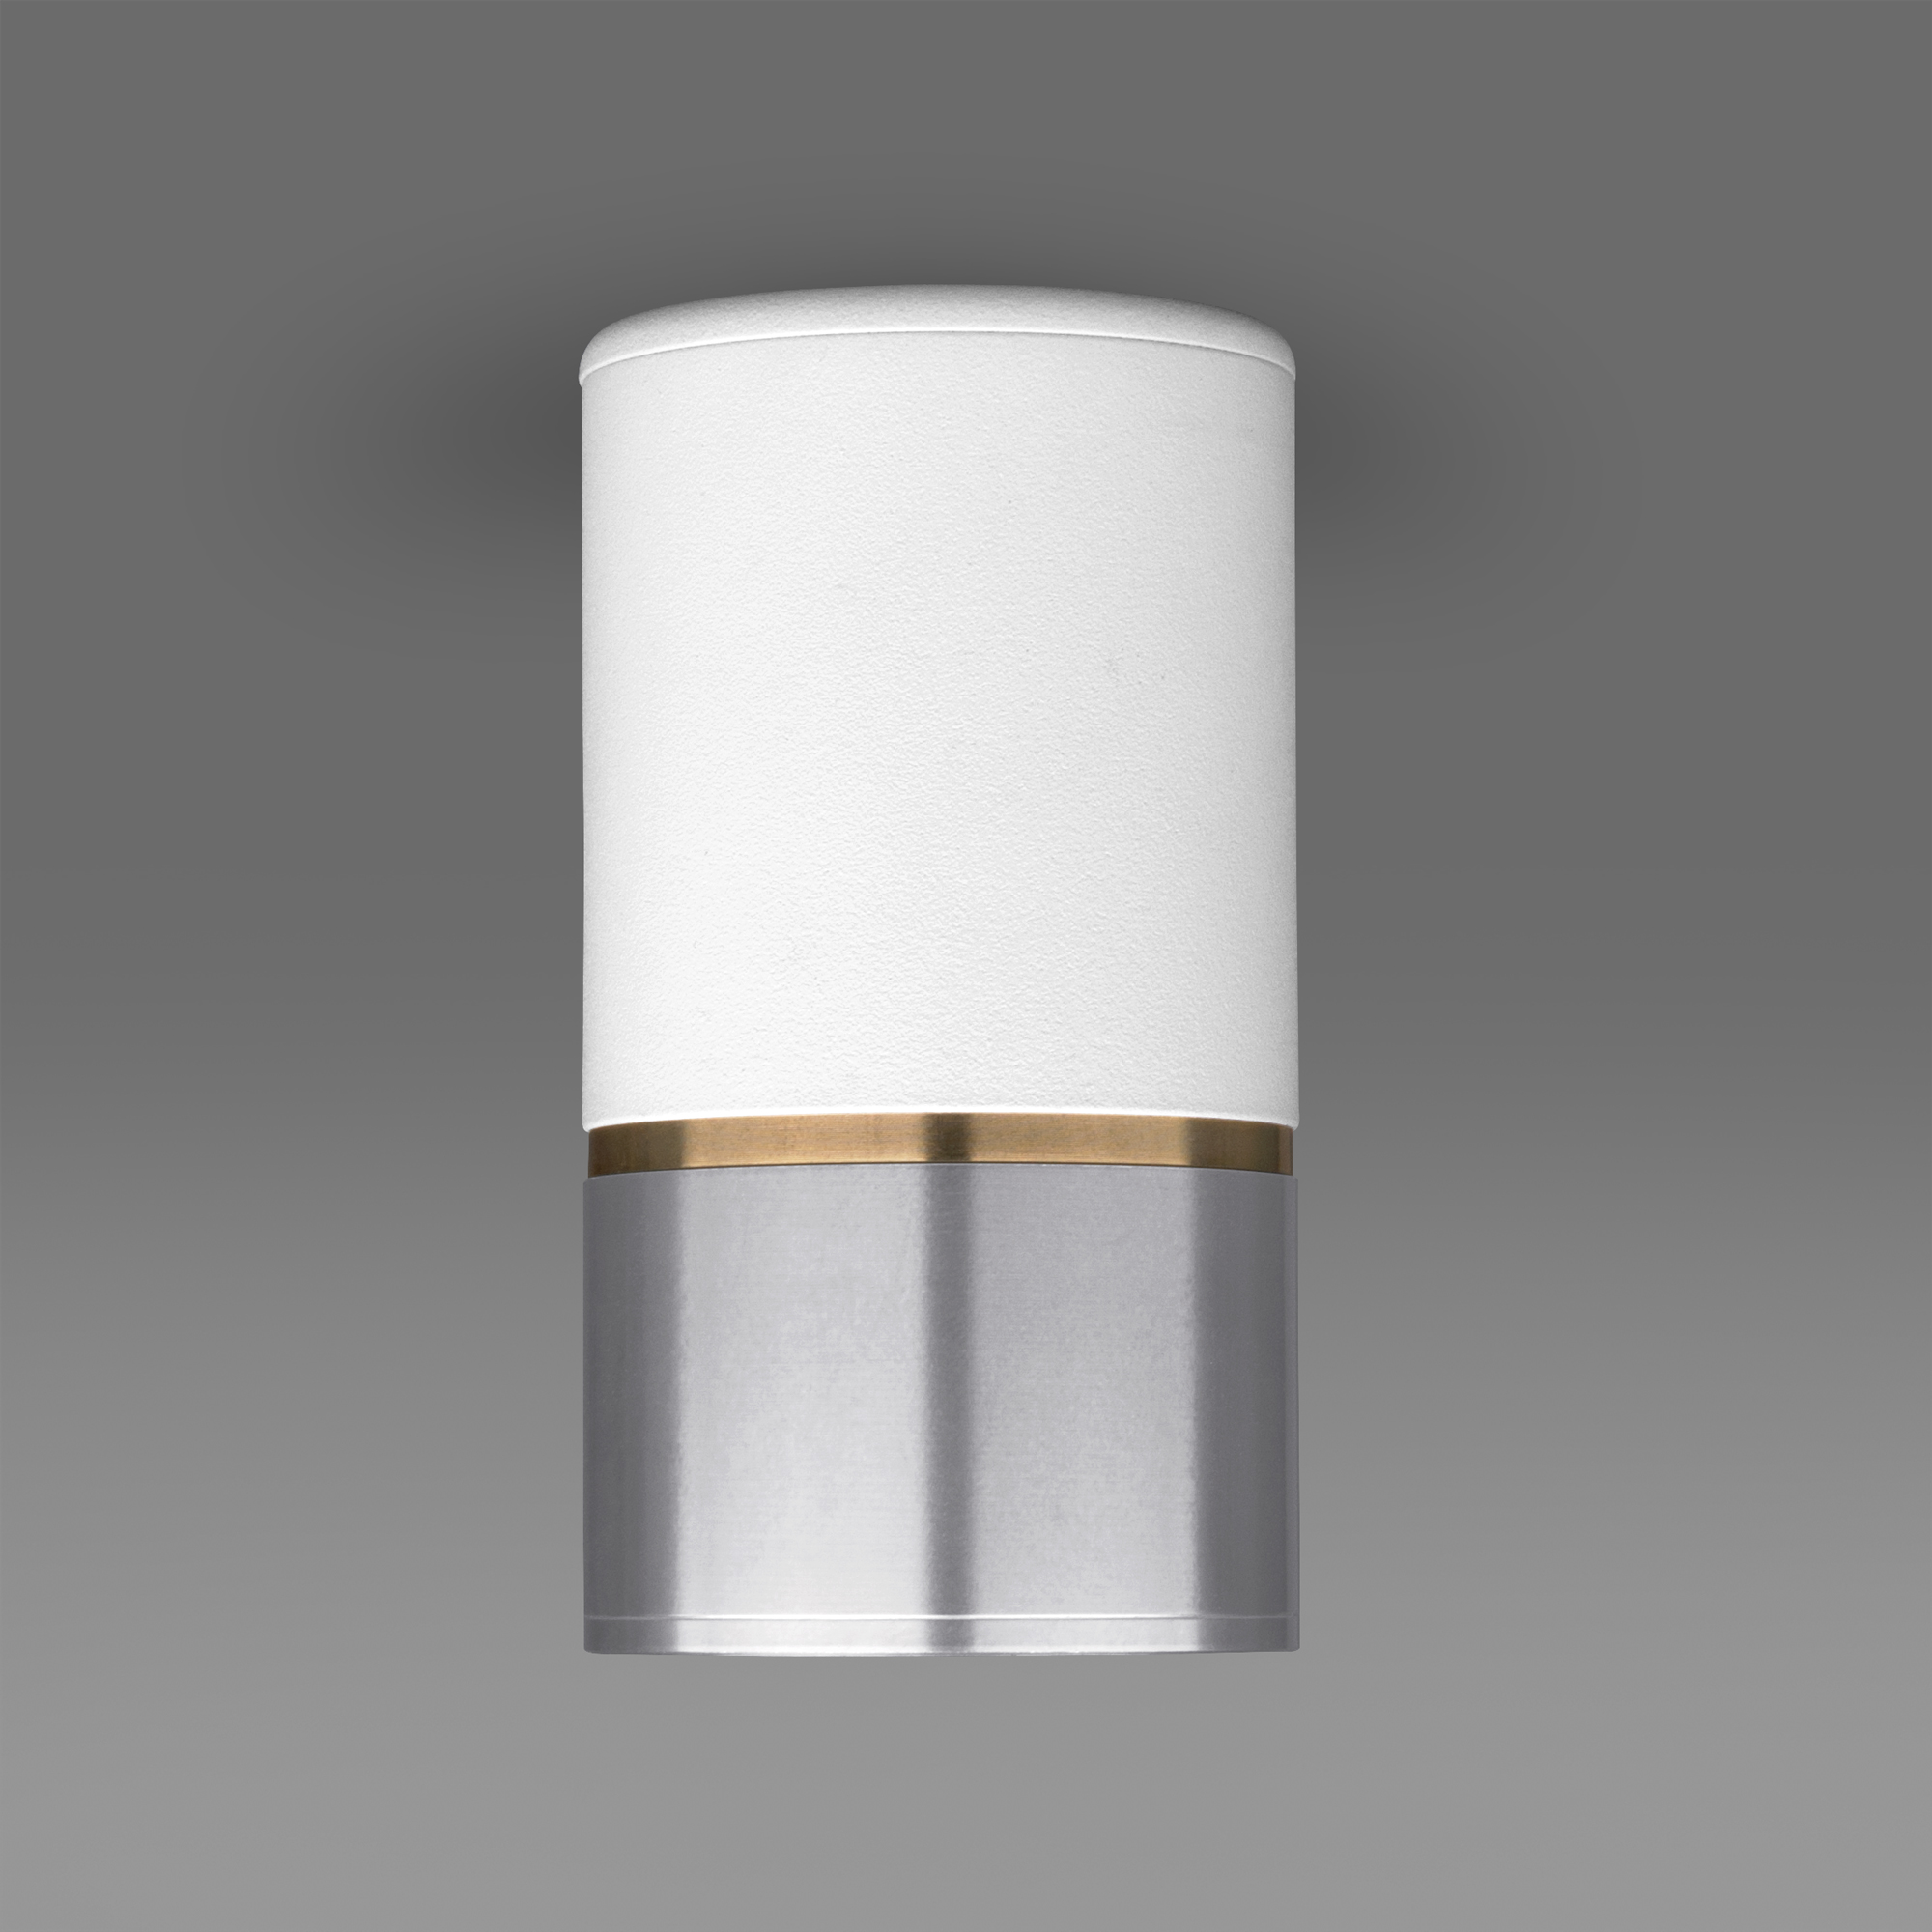 Потолочный светильник Elektrostandard DLN106 GU10 белый/серебро